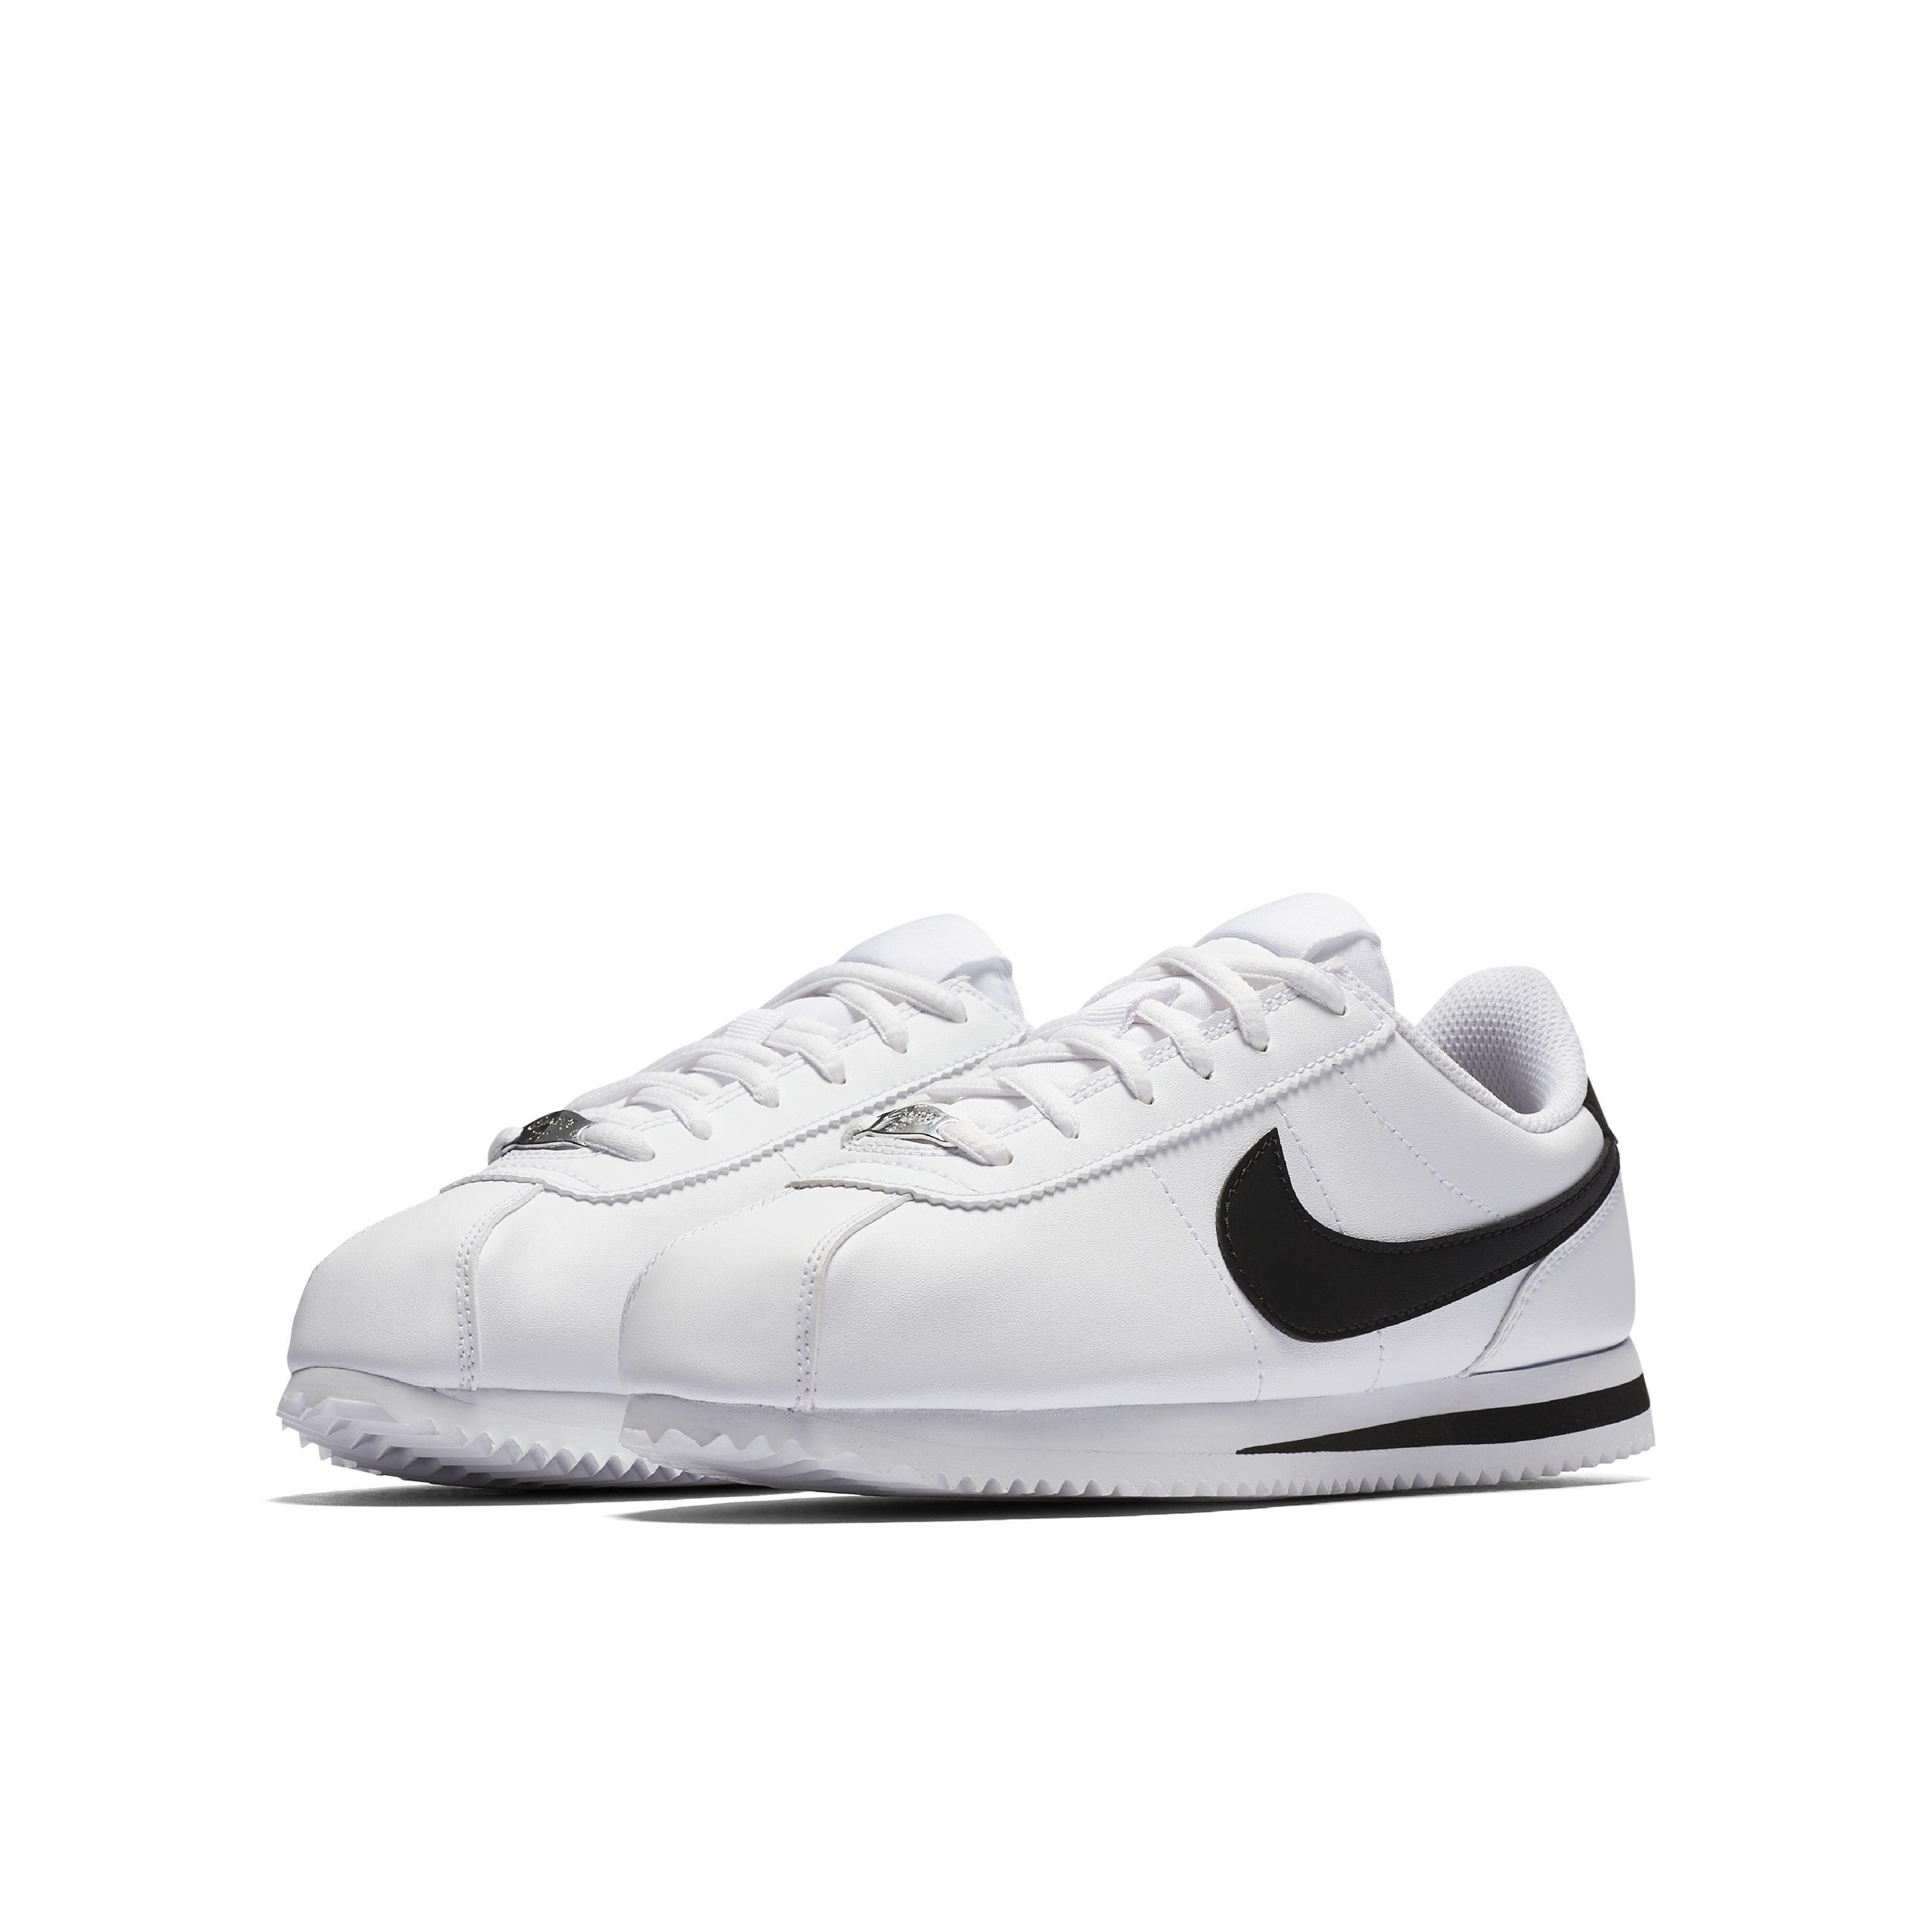 White Nike Cortez